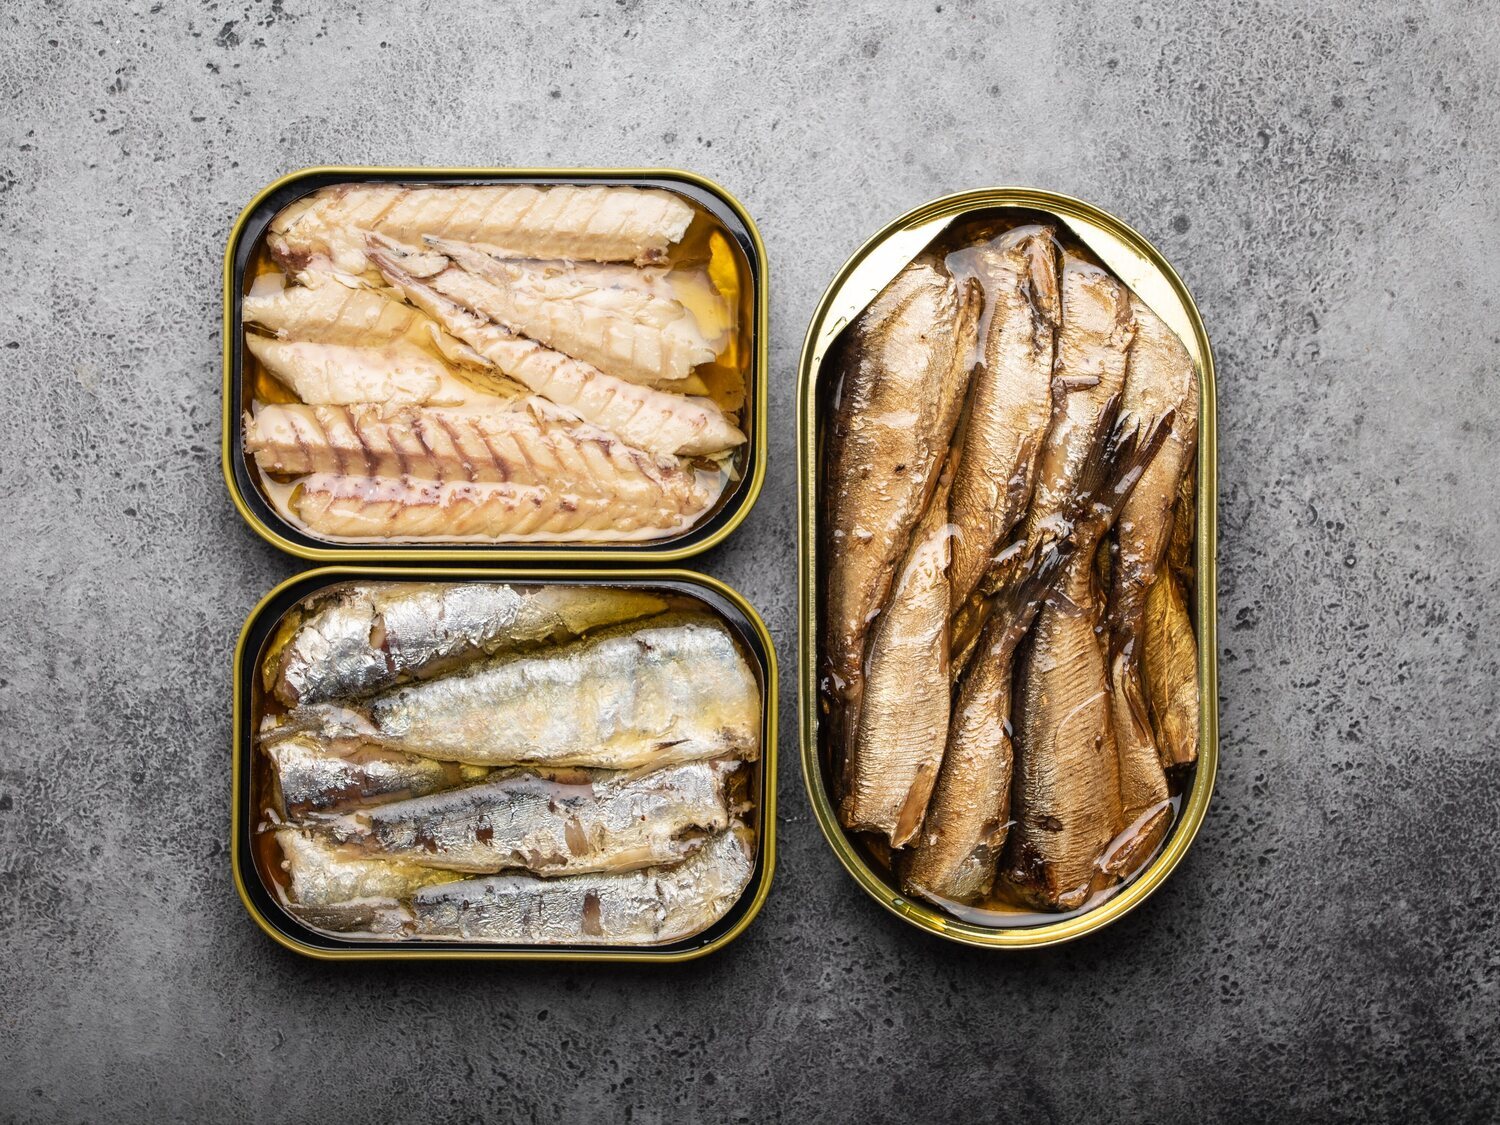 Alerta alimentaria en España: se detecta contaminación por histaminas en unas sardinas del supermercado